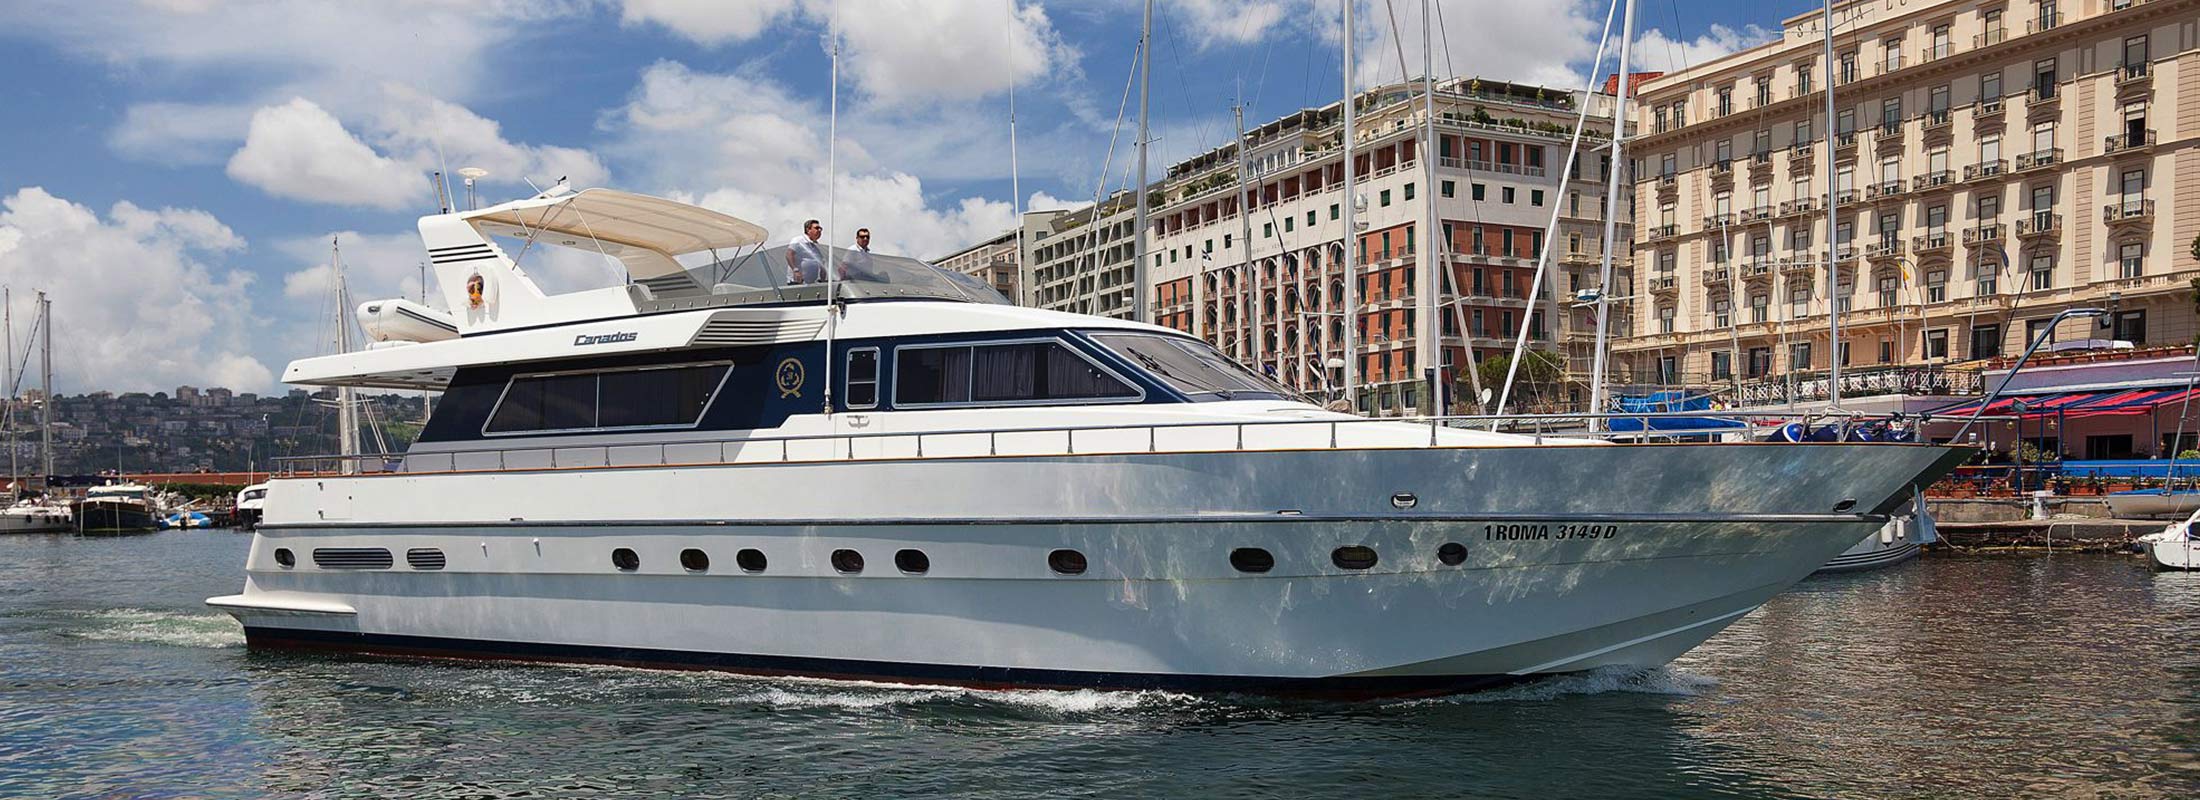 Bernadette Motor Yacht for Charter Mediterranean slider 1